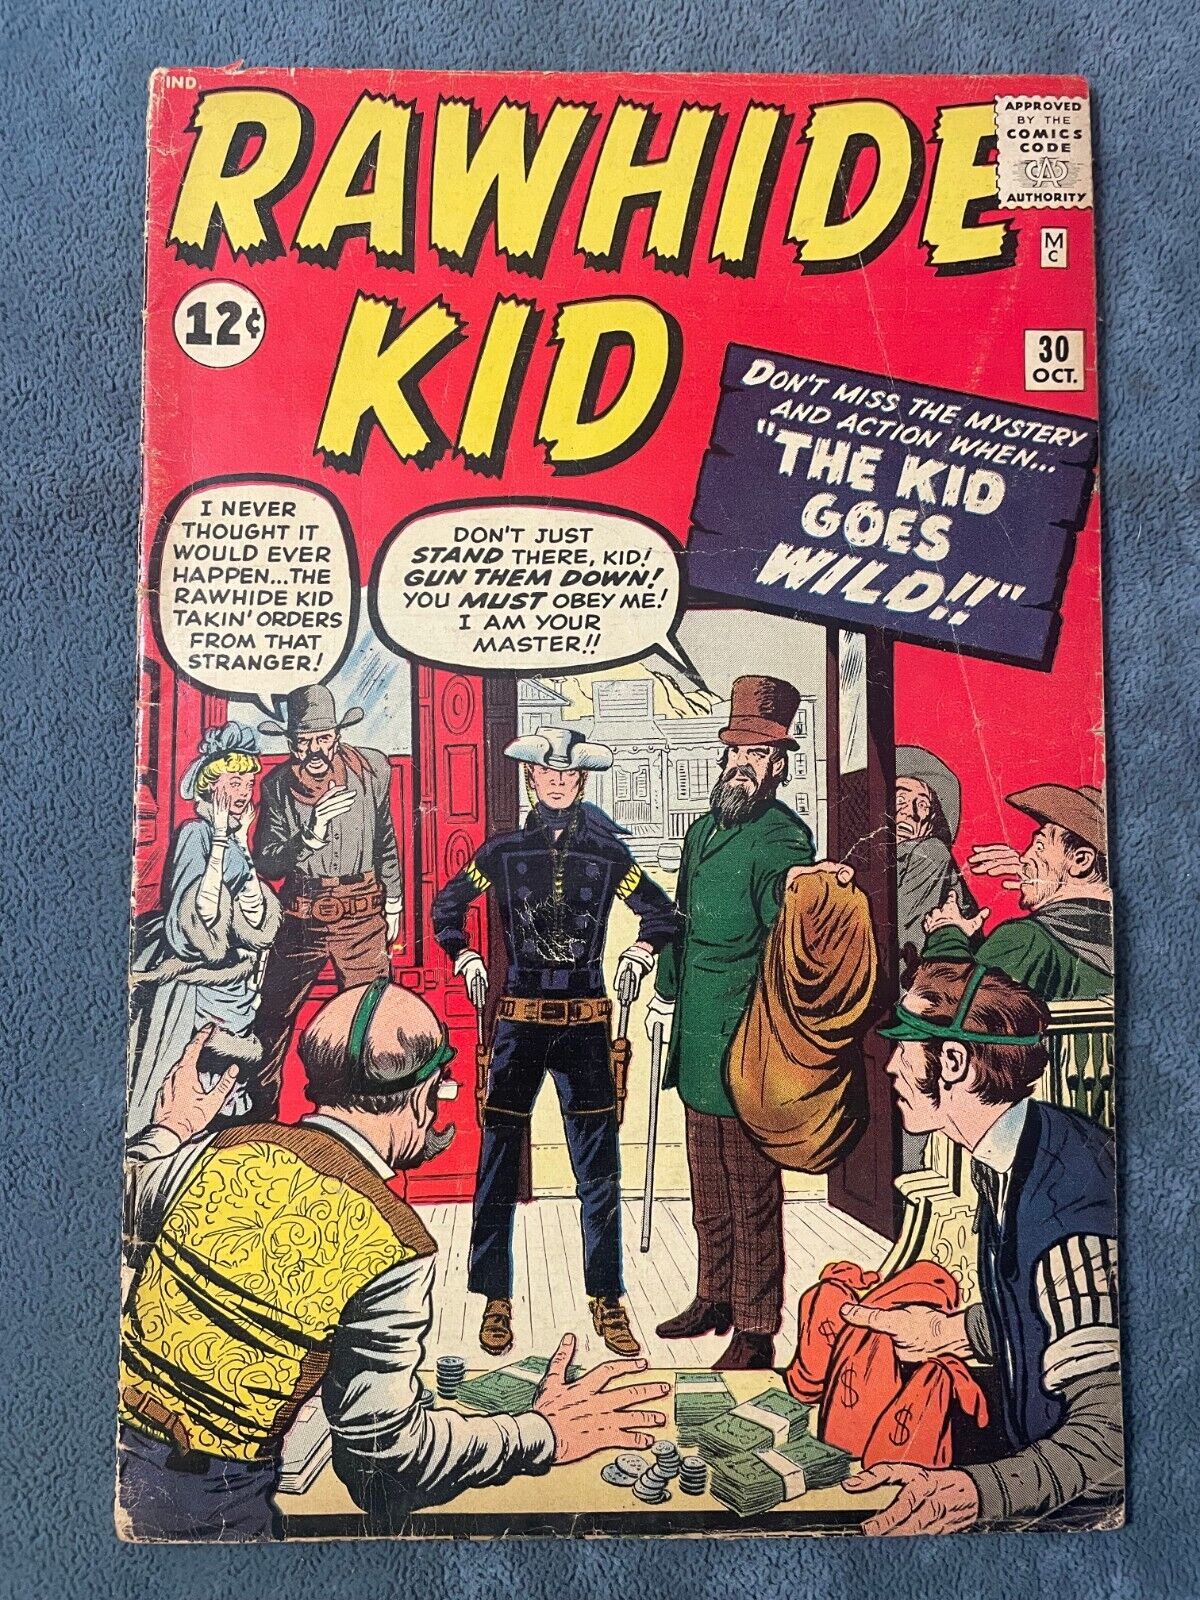 Rawhide Kid #30 1963 Atlas Marvel Comic Book Western Jack Kirby Cover GD+